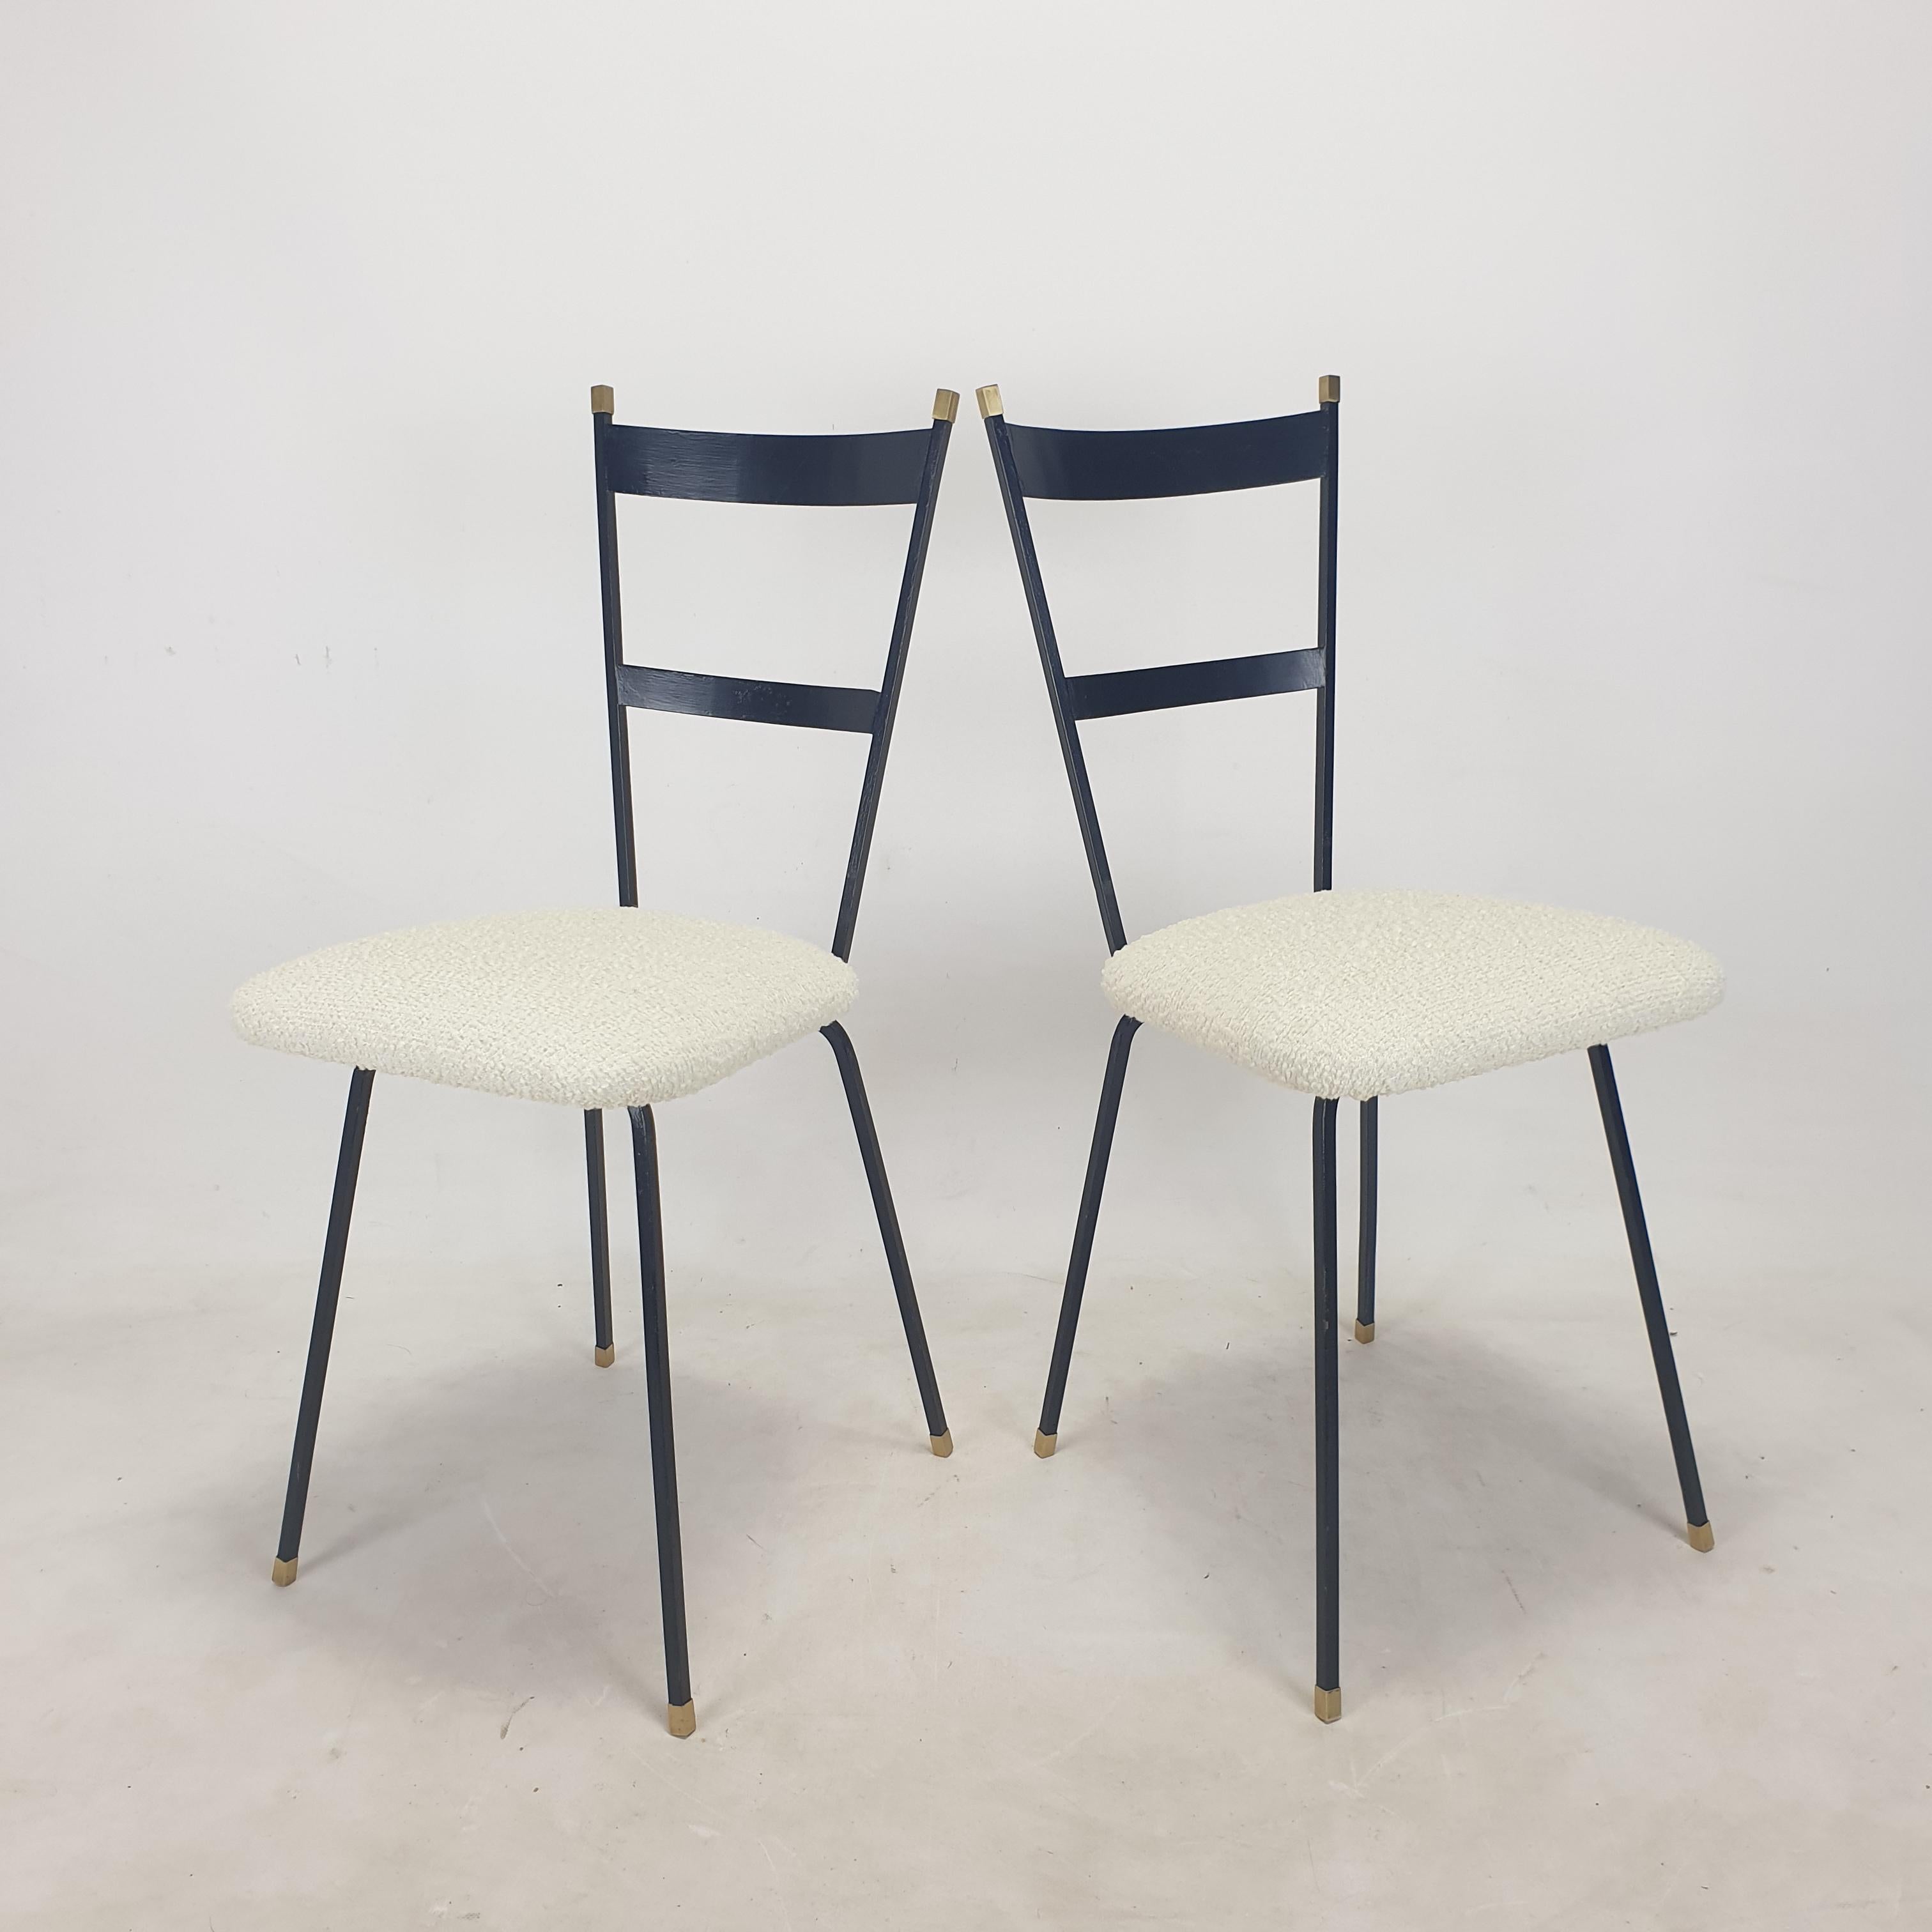 Schöner Satz italienischer Sessel, 1960er Jahre.
Aus schwarz lackiertem Stahl mit schönen Messingdetails an den Beinen und auf der Rückenlehne.

Die Stühle sind mit neuem Stoff und neuem Schaumstoff restauriert, sie sind in perfektem